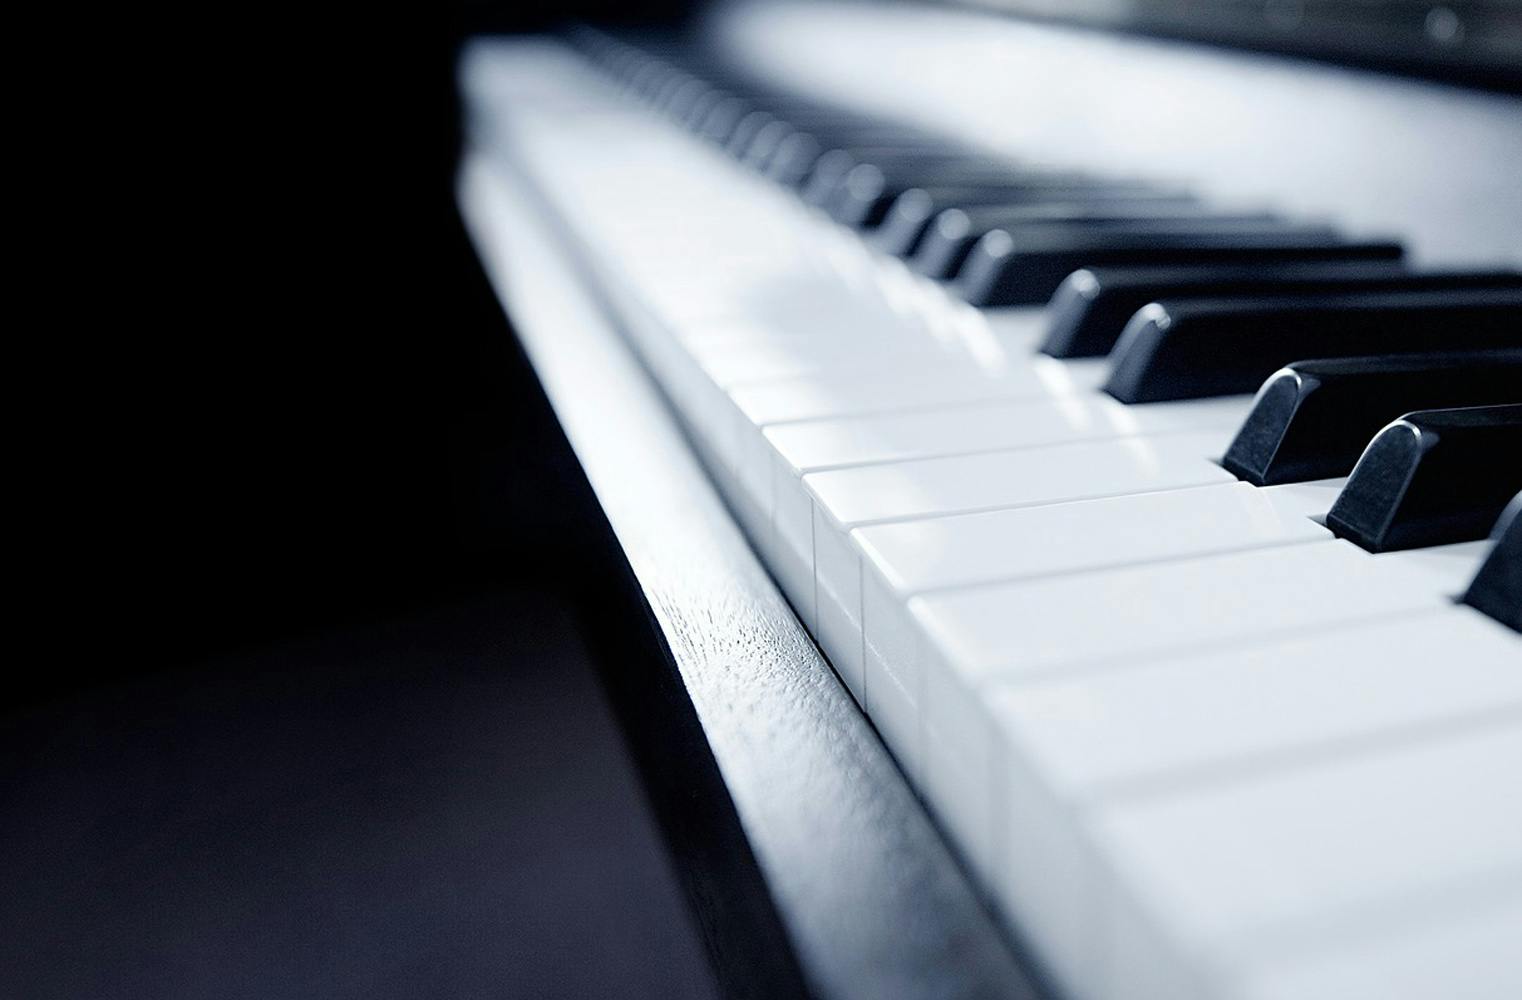 Klavier lernen über Videochat | 3 Einheiten à 45 Min.